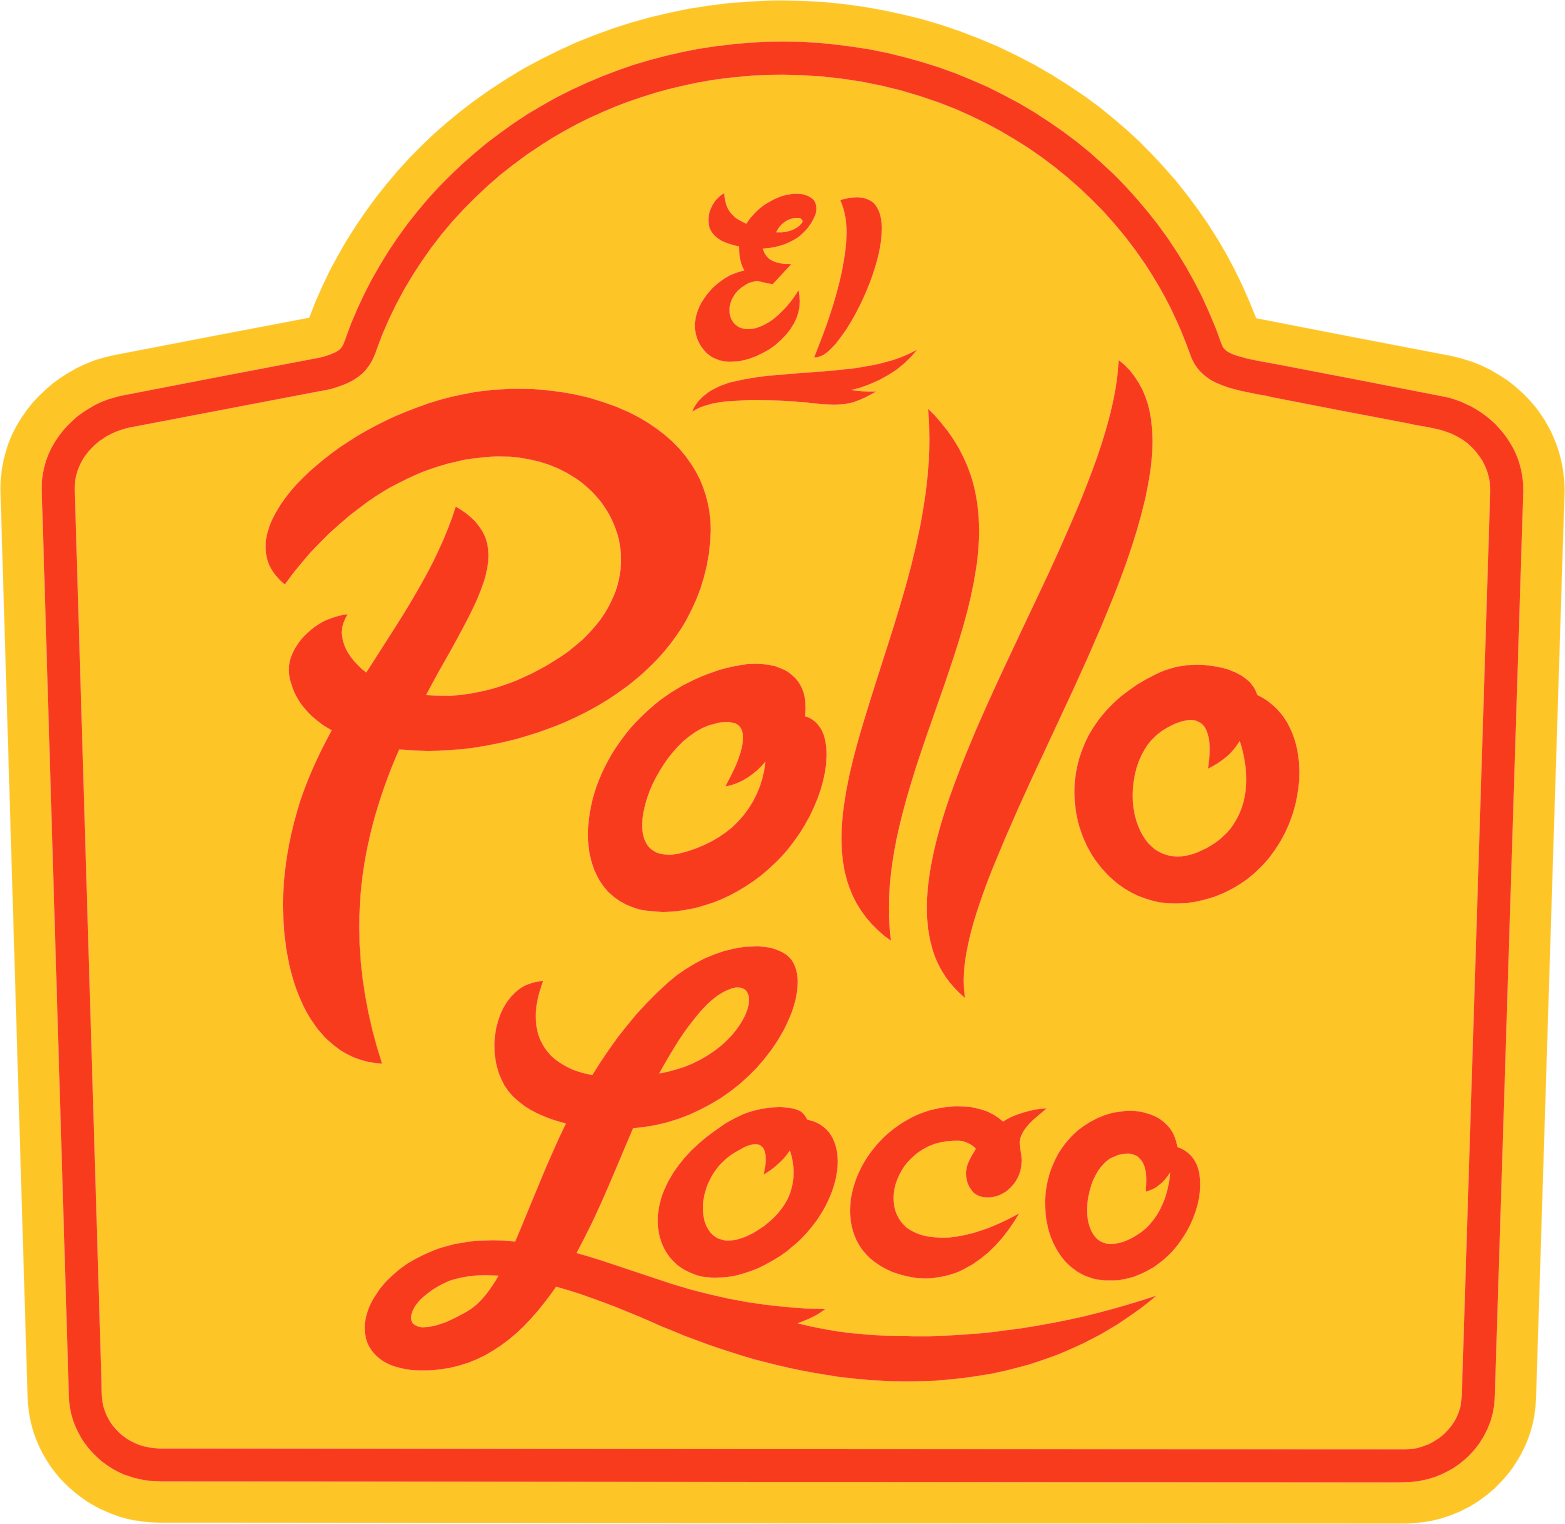 El Pollo Loco
 logo (PNG transparent)